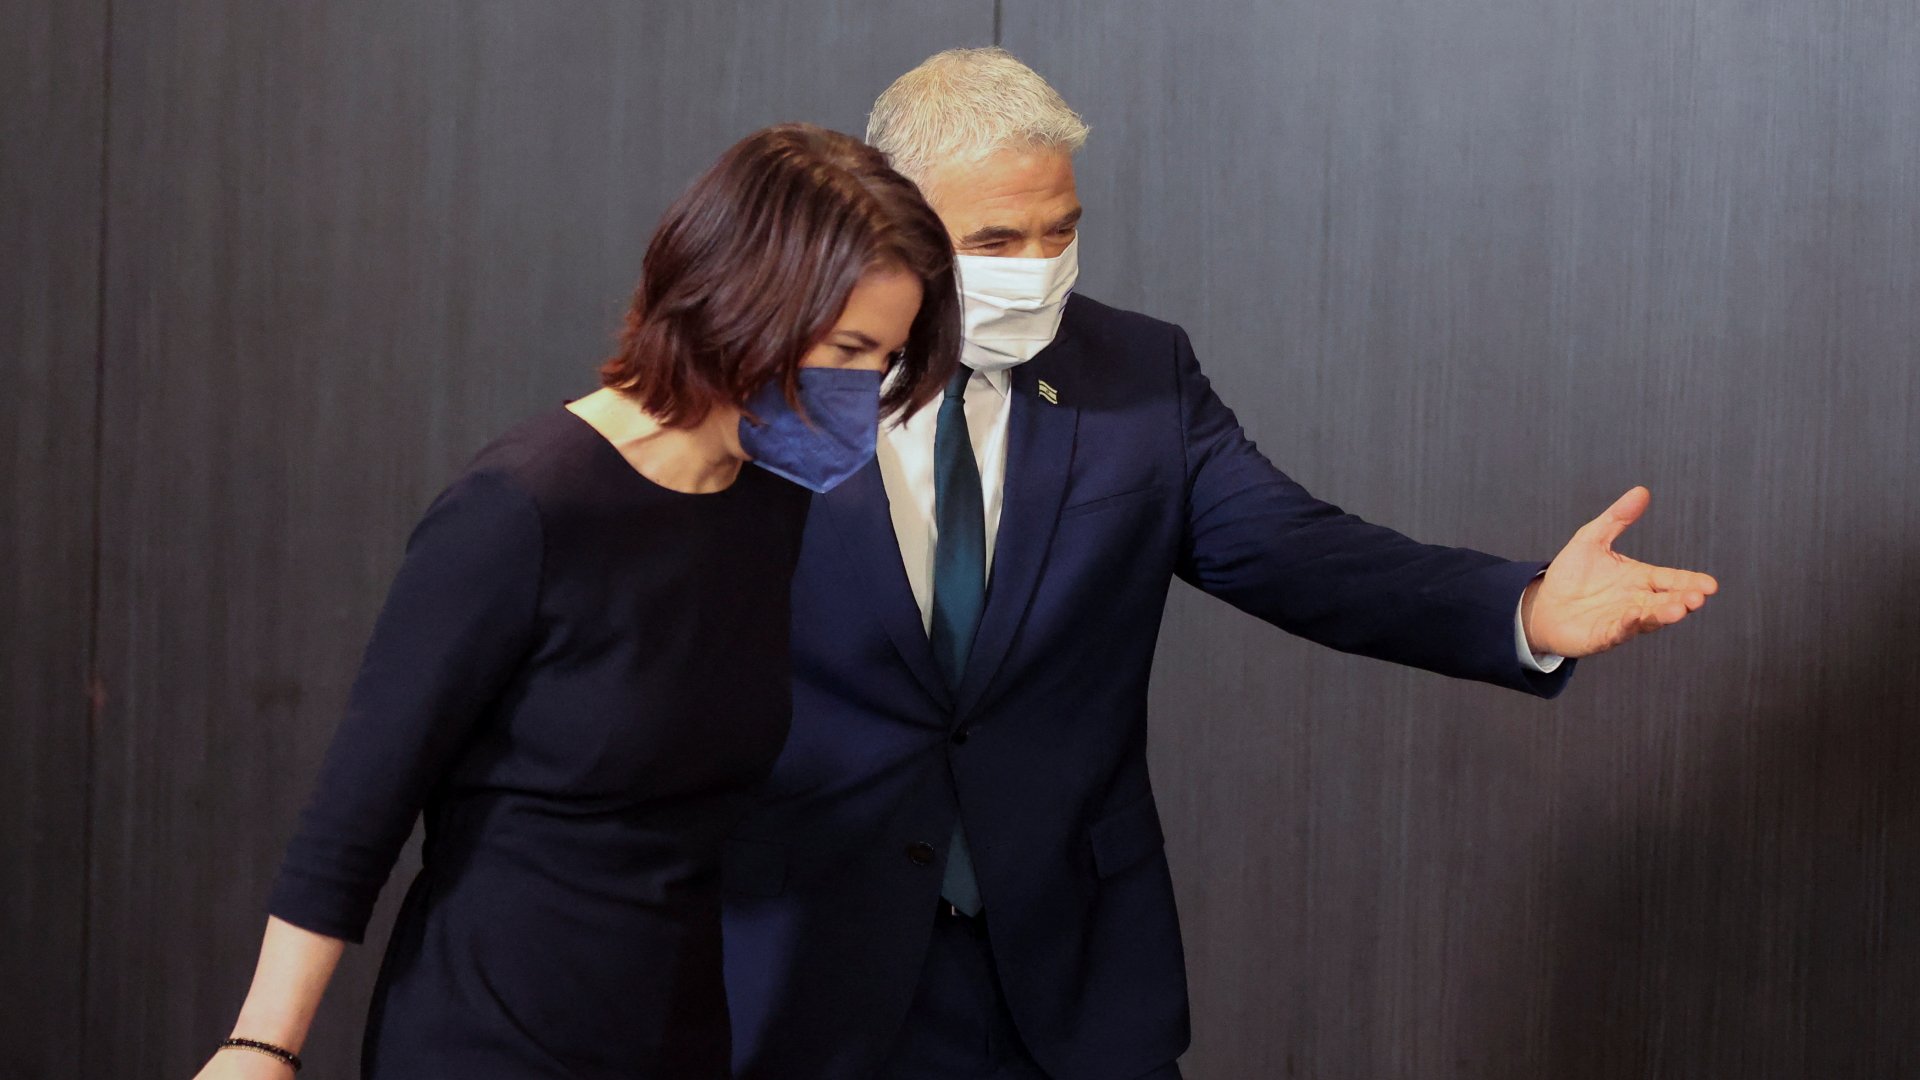 Bundesaußenministerin Annalena Baerbock und Israels Außenminister Jair Lapid auf dem Weg zur gemeinsamen Pressekonferenz im Februar 2022. Beide tragen Corona-Schutzmasken. | REUTERS